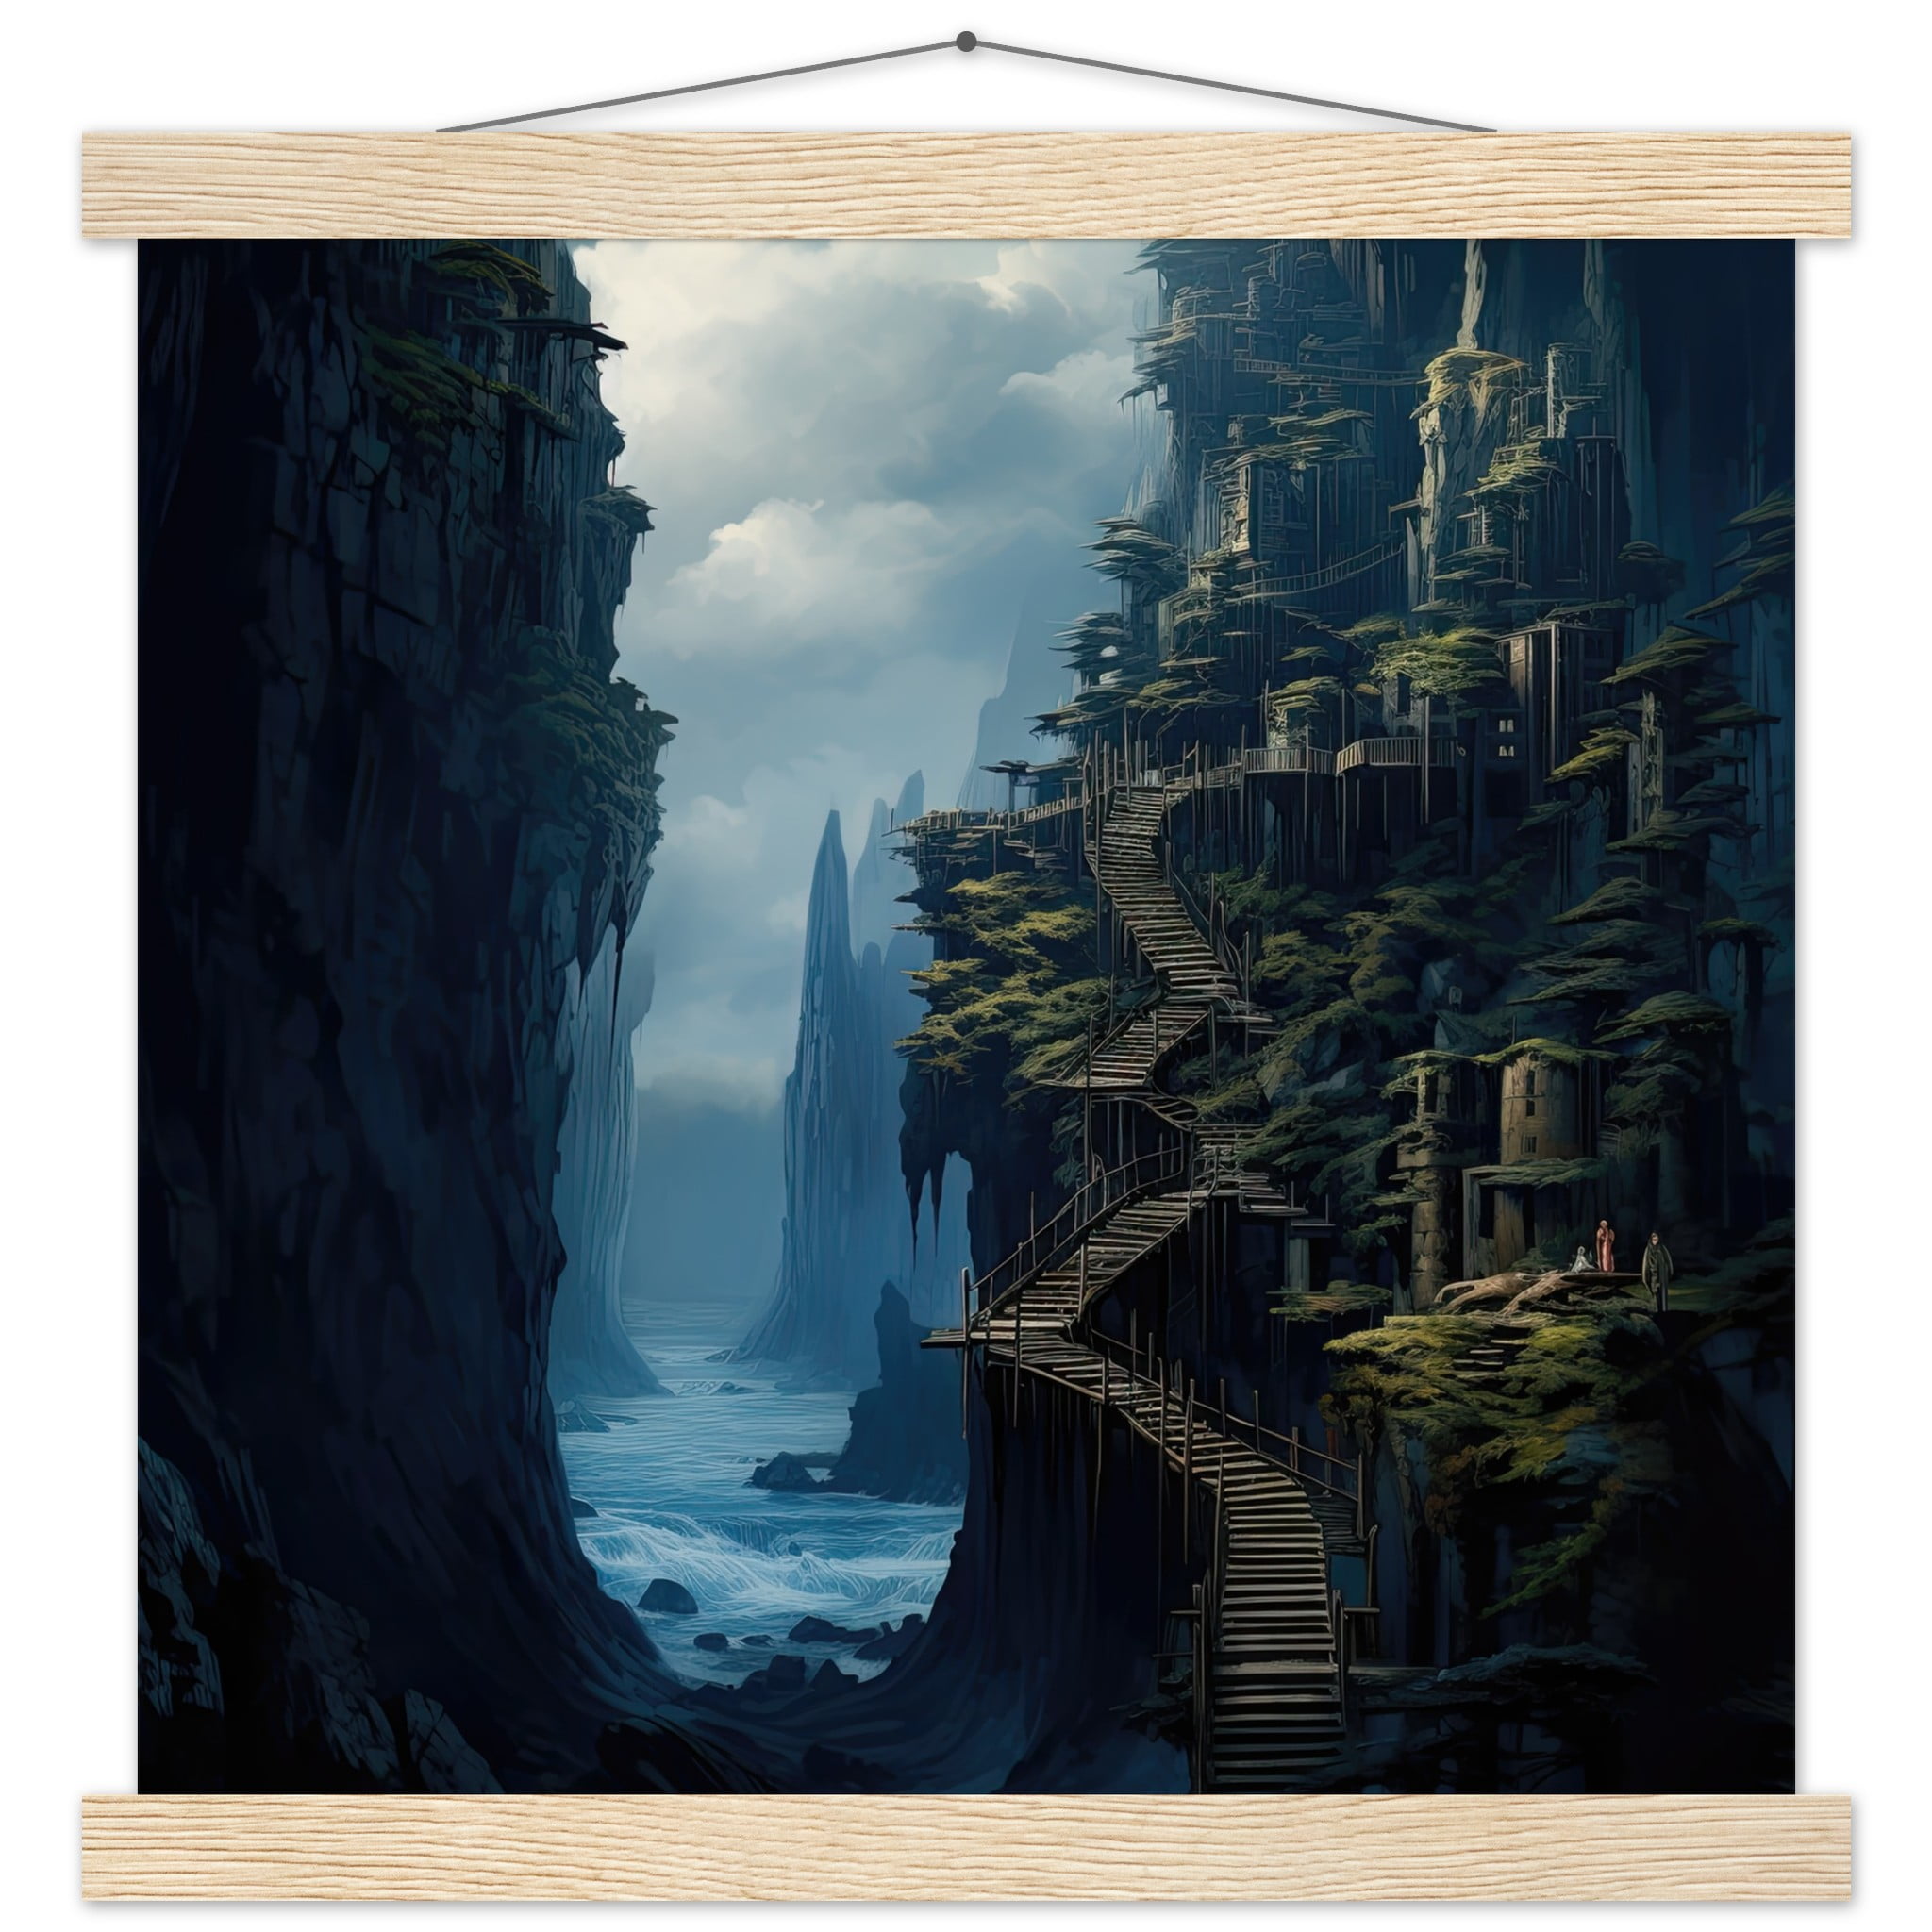 Cliffside Kingdom Landscape Art Print with Hanger – 35×35 cm / 14×14″, Natural wood wall hanger